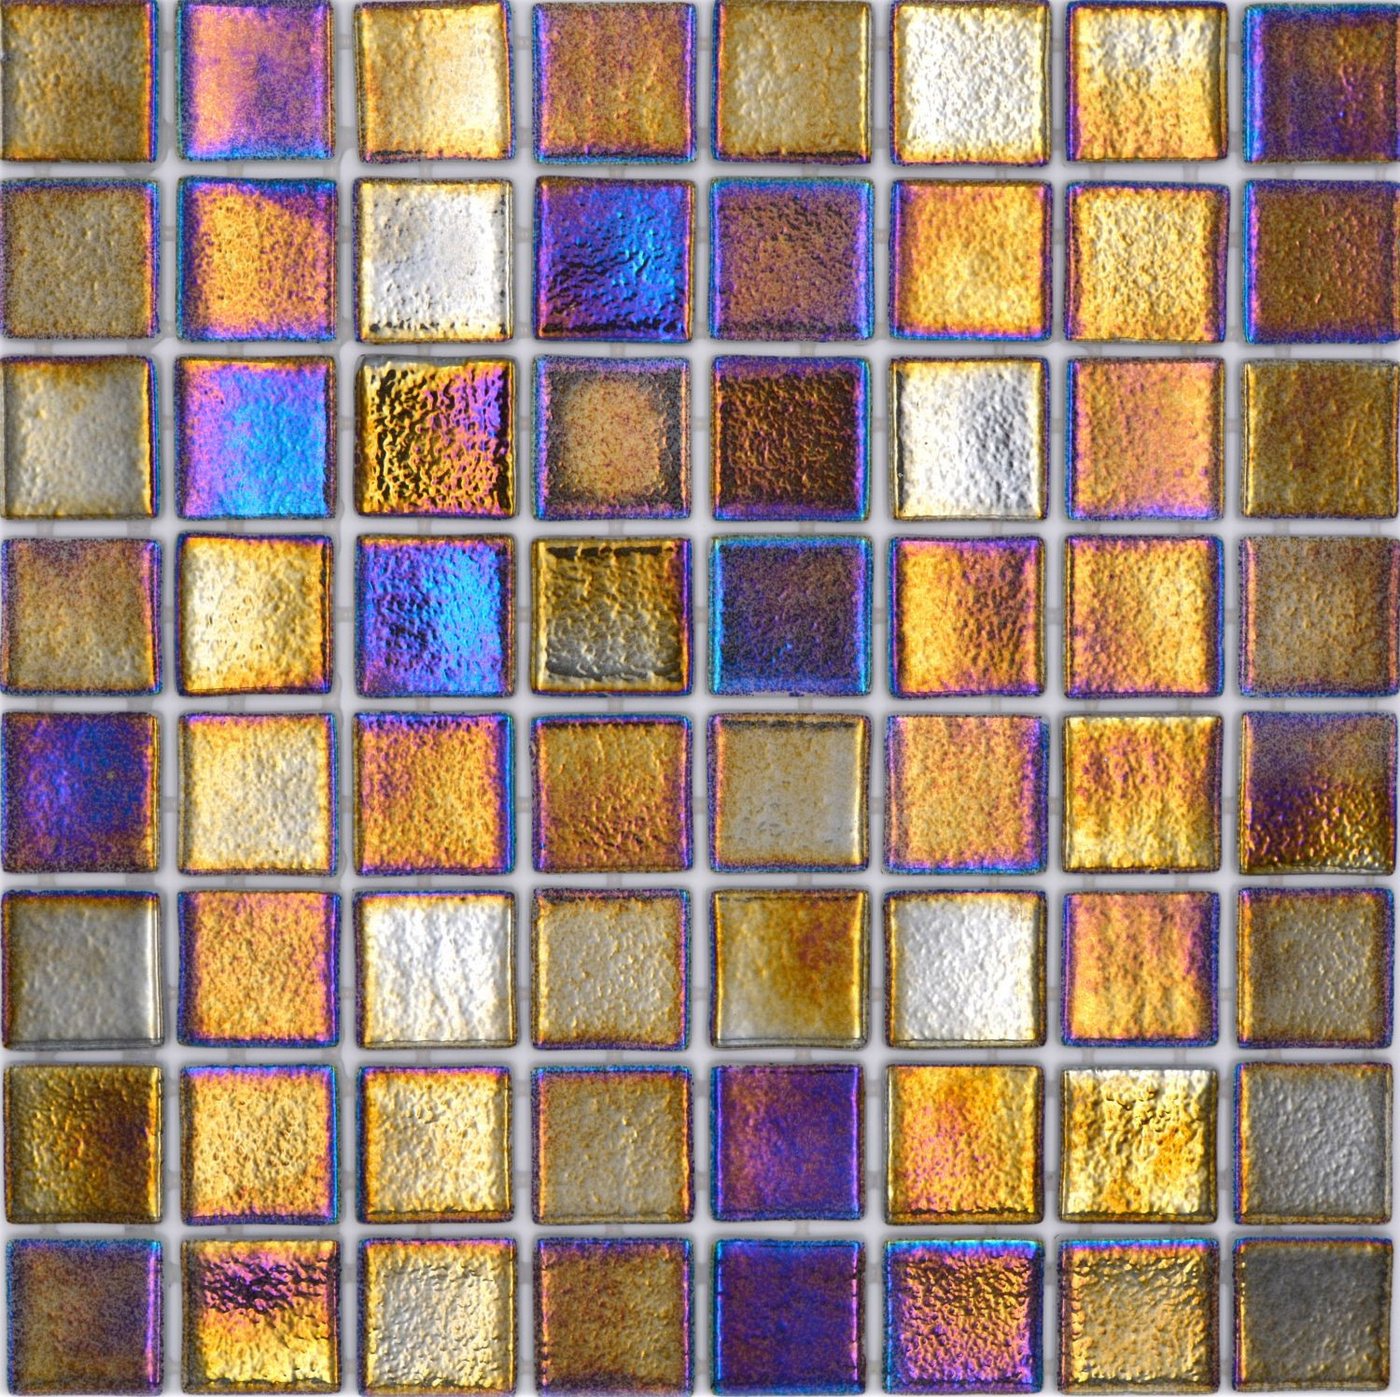 Mosani Mosaikfliesen Schwimmbad Pool Glasmosaik schwarz mehrfarbig irisierend von Mosani